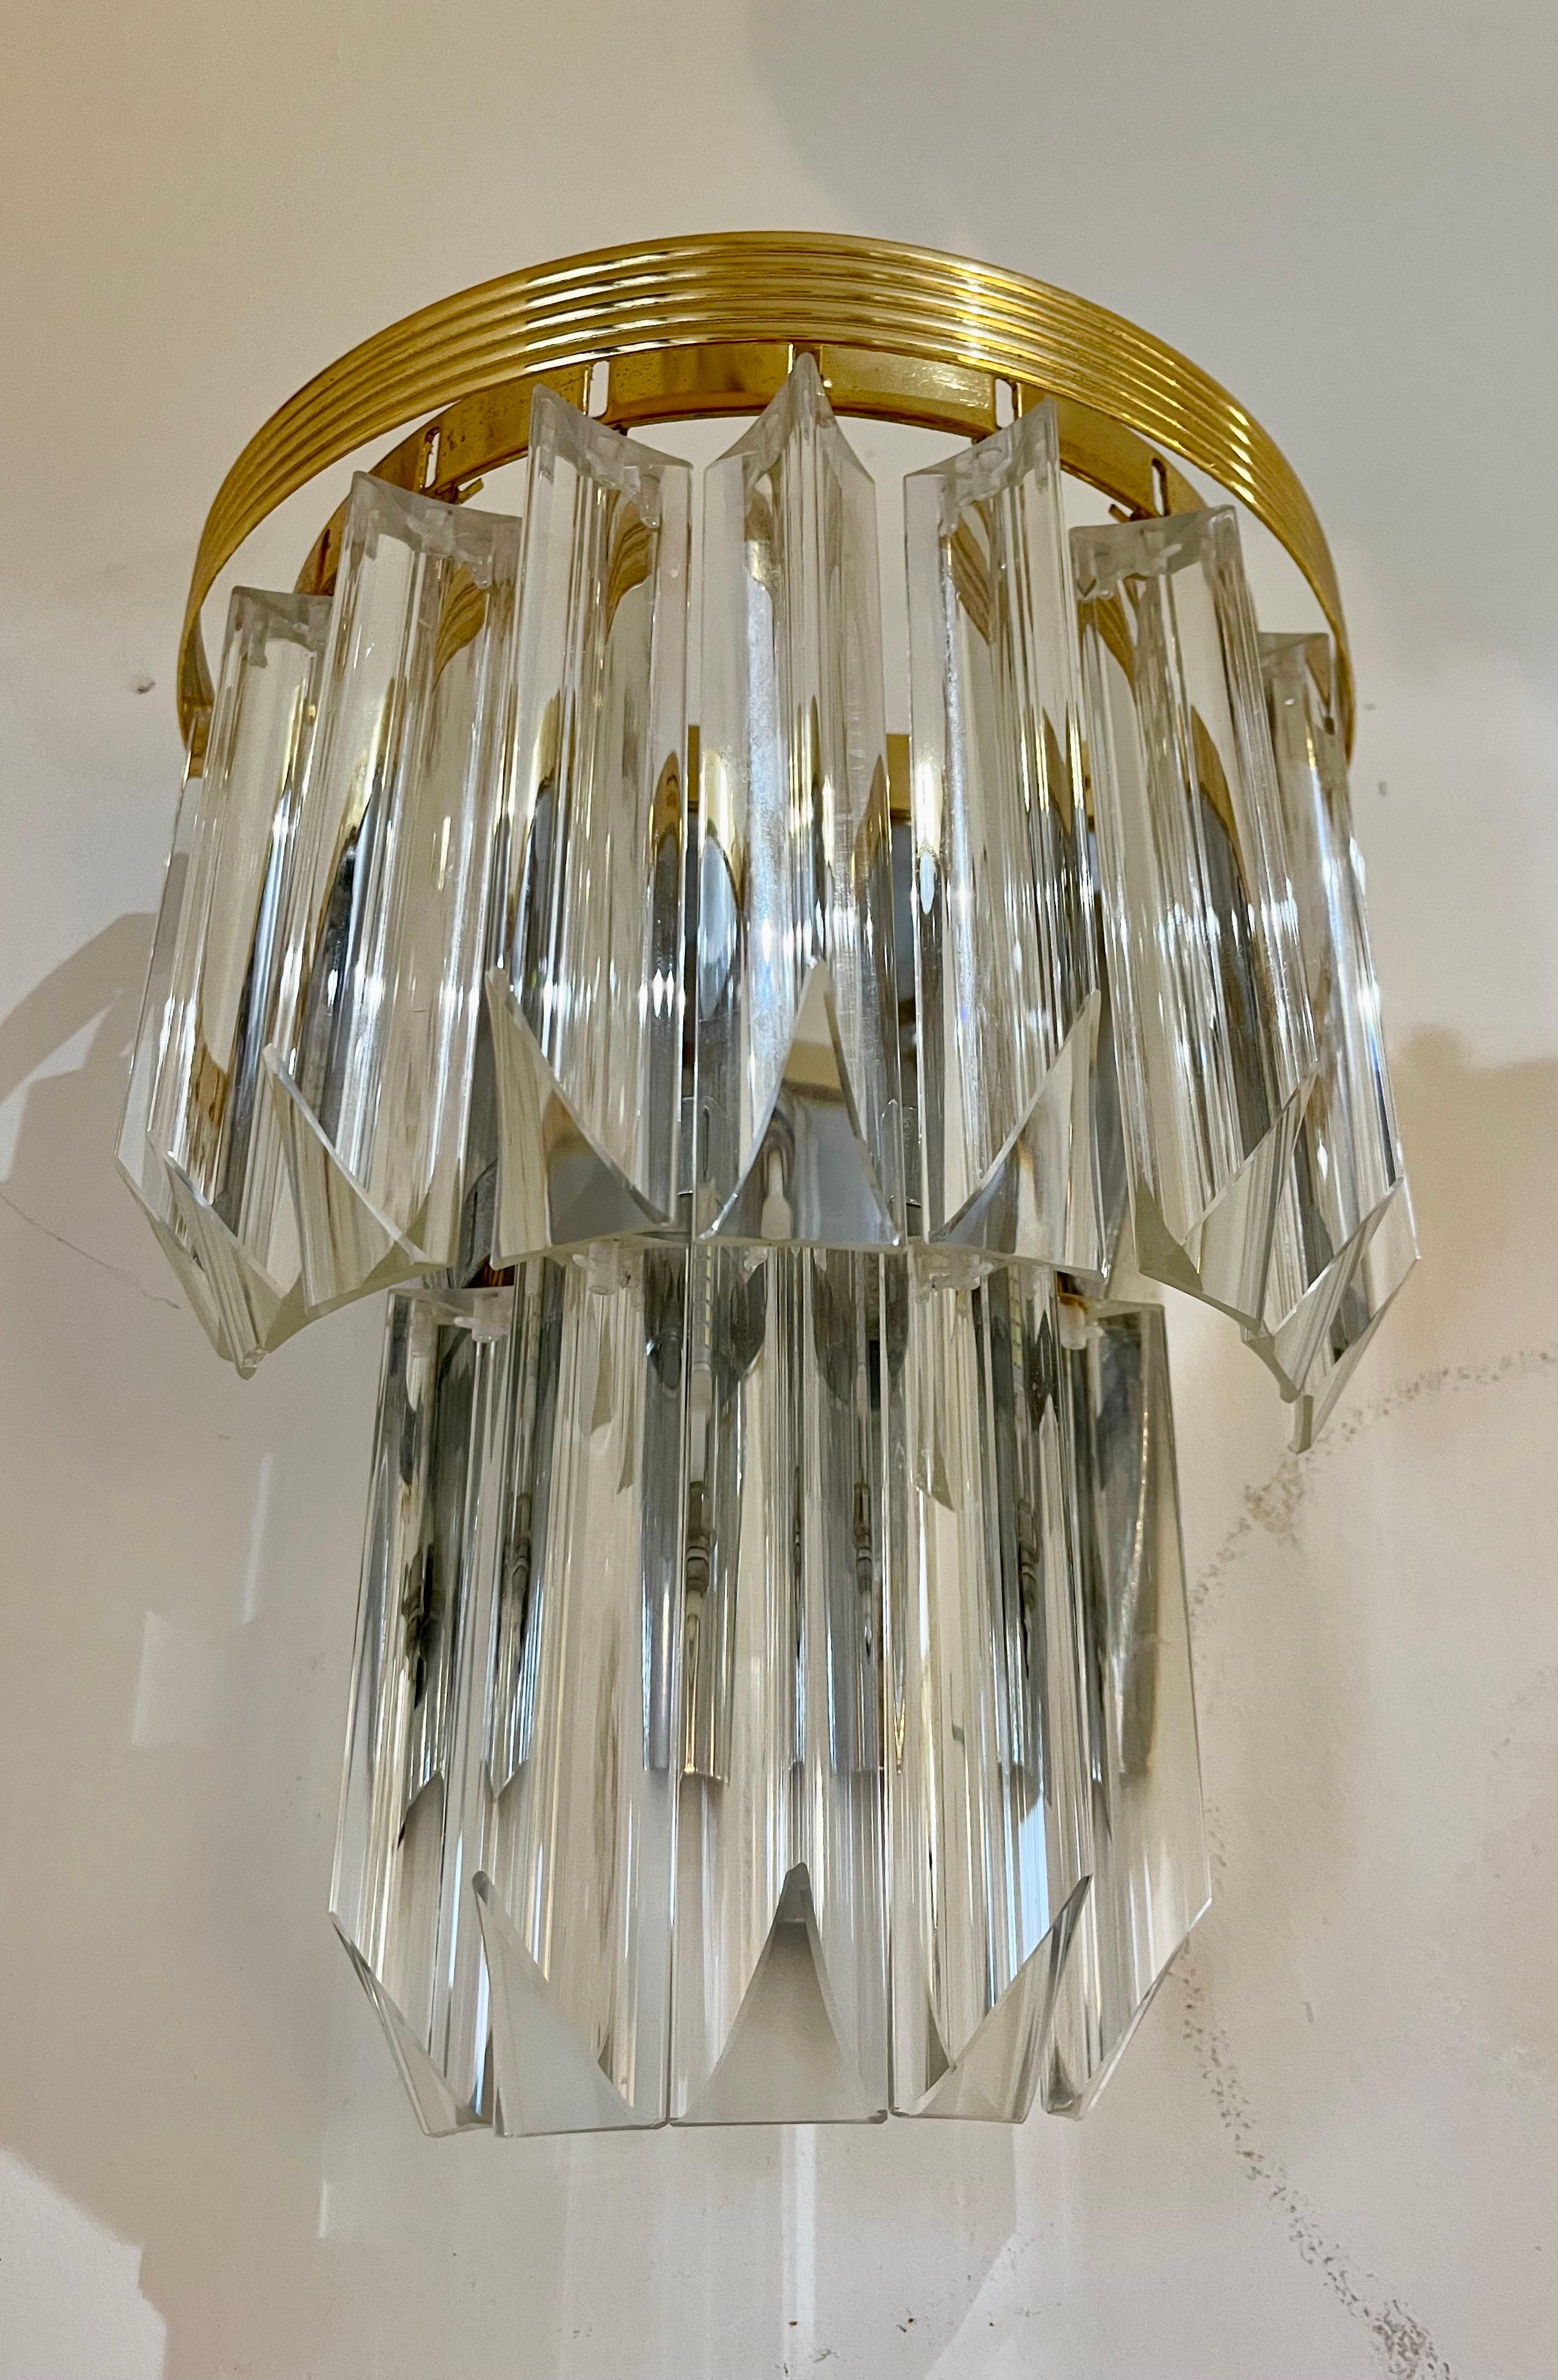 Venini Design-Wandleuchten aus Murano-Glas mit Iridium-Glas. Das Design und die Qualität des Glases machen dieses Stück zu einem der besten des Designs.
Diese Wandbeleuchtung Paar sind in gutem Zustand.

Venini ist ein italienisches Unternehmen, das